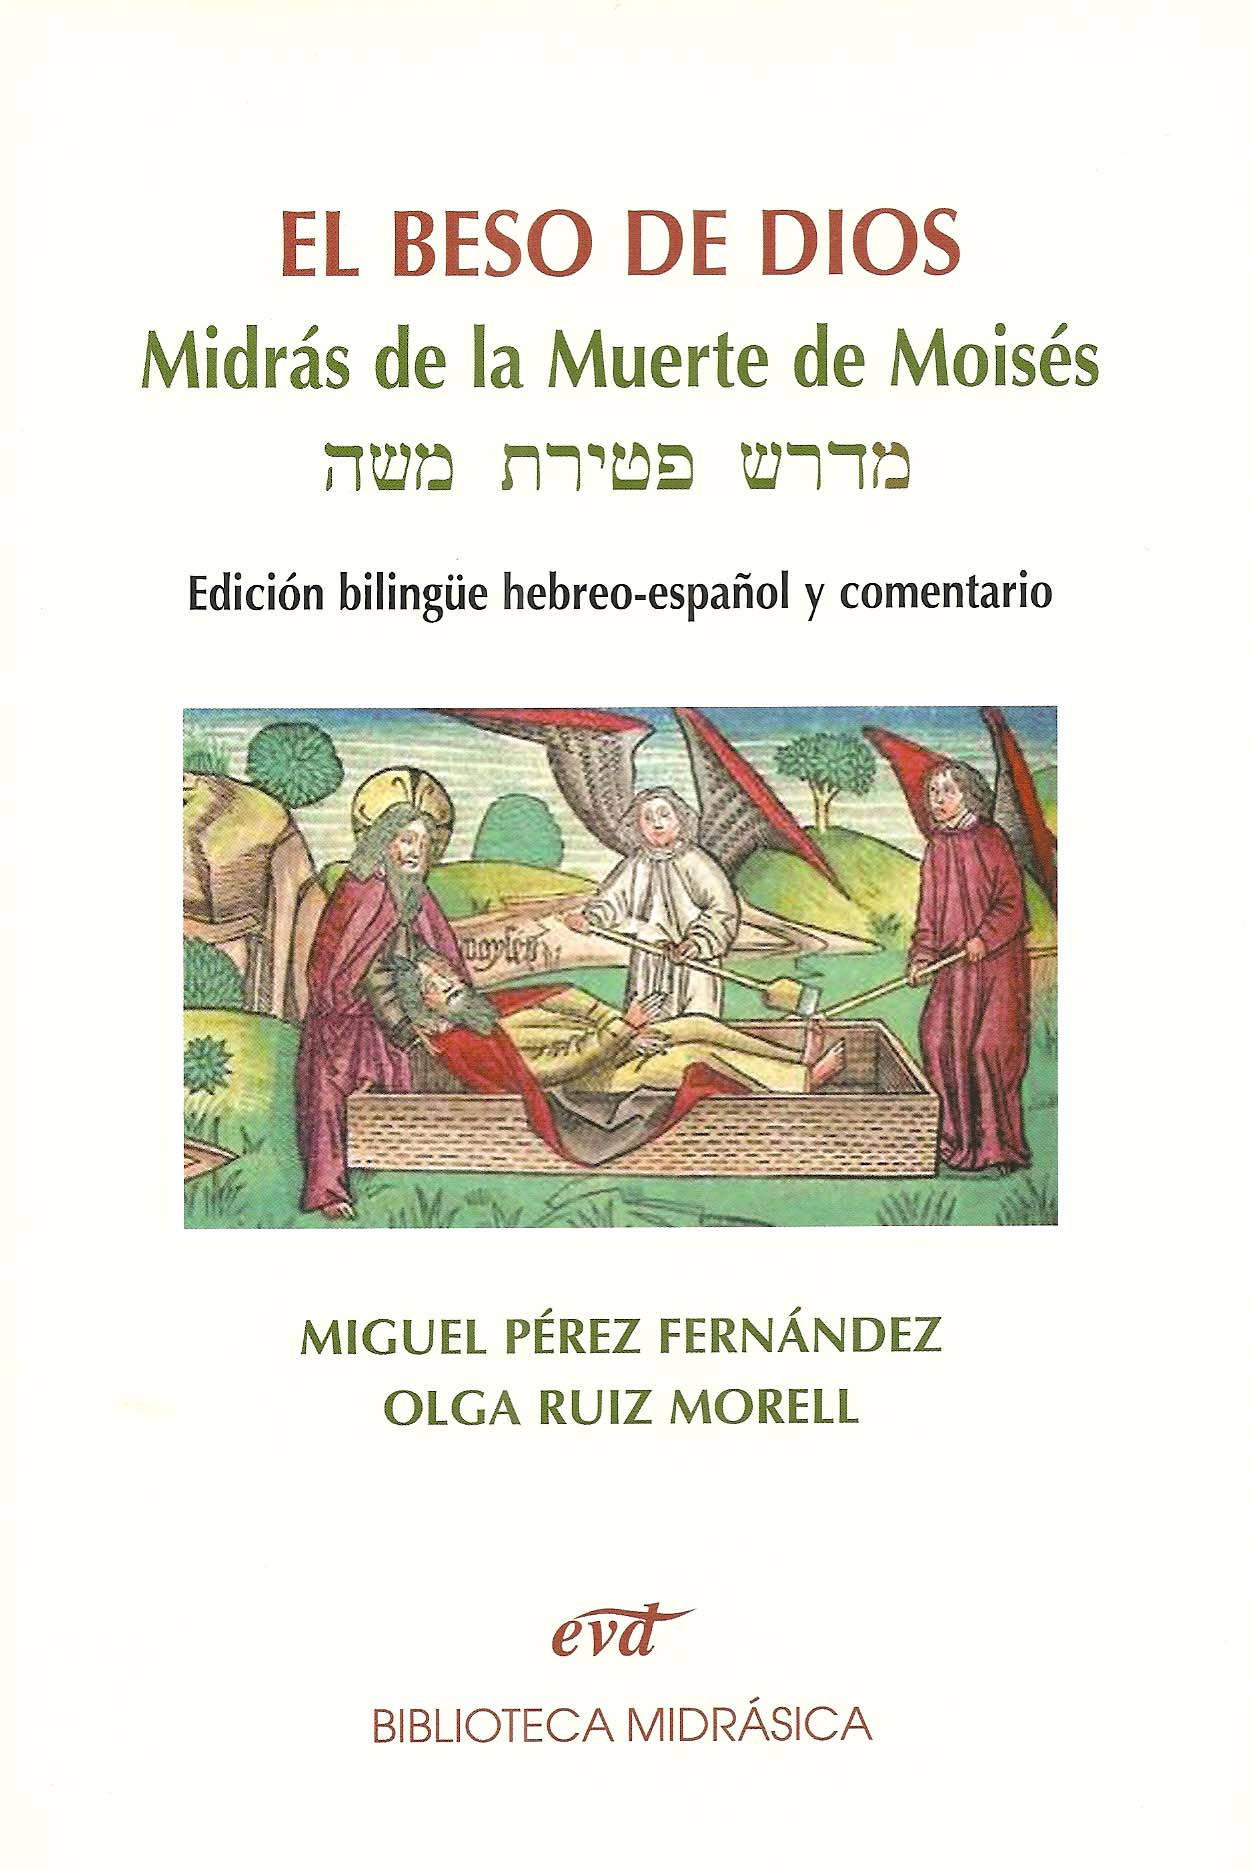 El beso de Dios, midrás de la muerte de Moisés edición bilingue hebreo-español y comentario